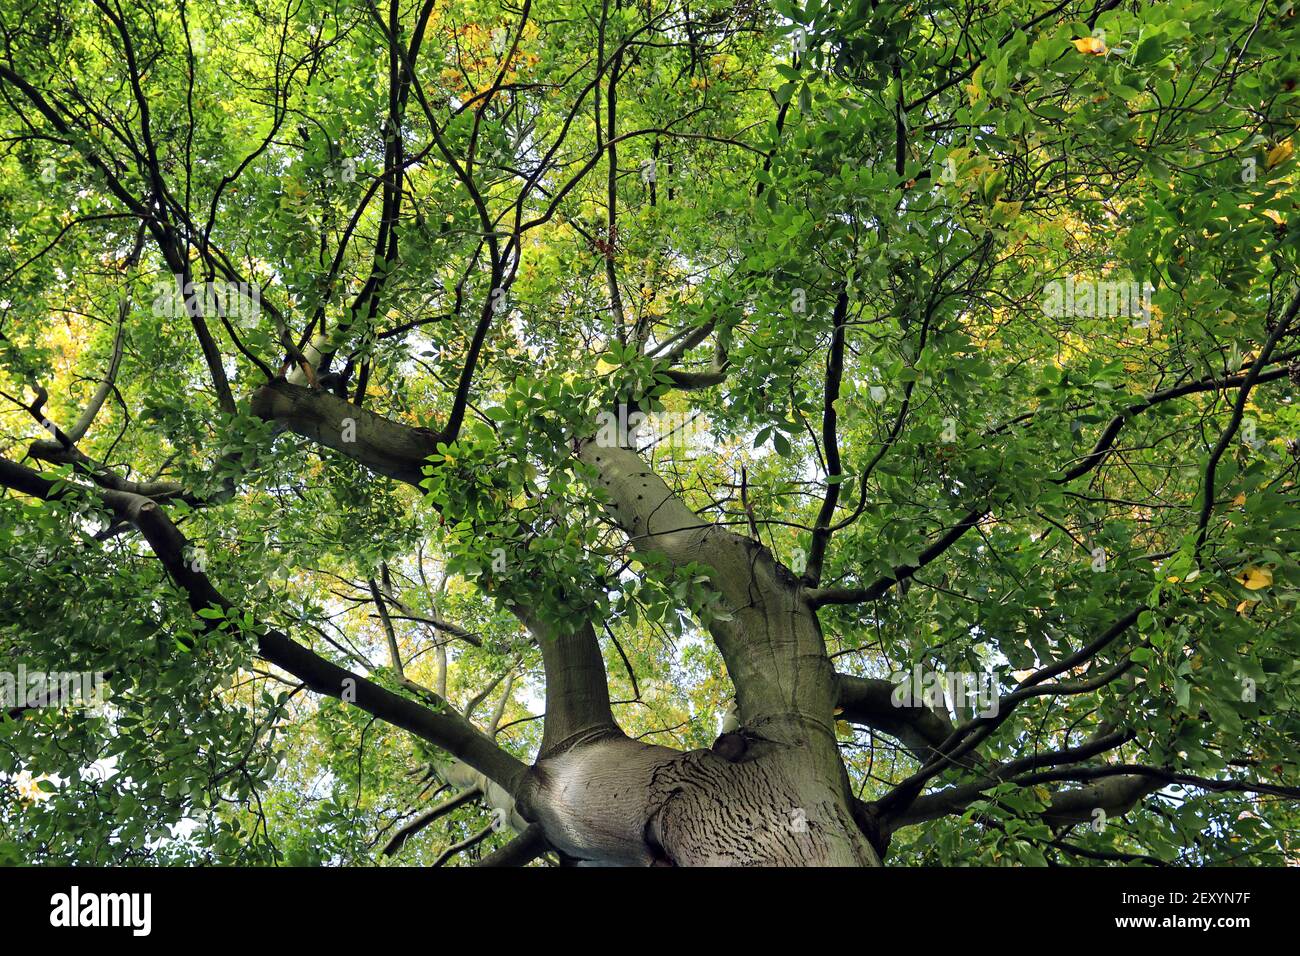 Pignut Hickory (Carya glabra) albero, primi di ottobre. Guardando fino al baldacchino di foglie verdi, appena cominciando a diventare giallo come la stagione cambia Foto Stock